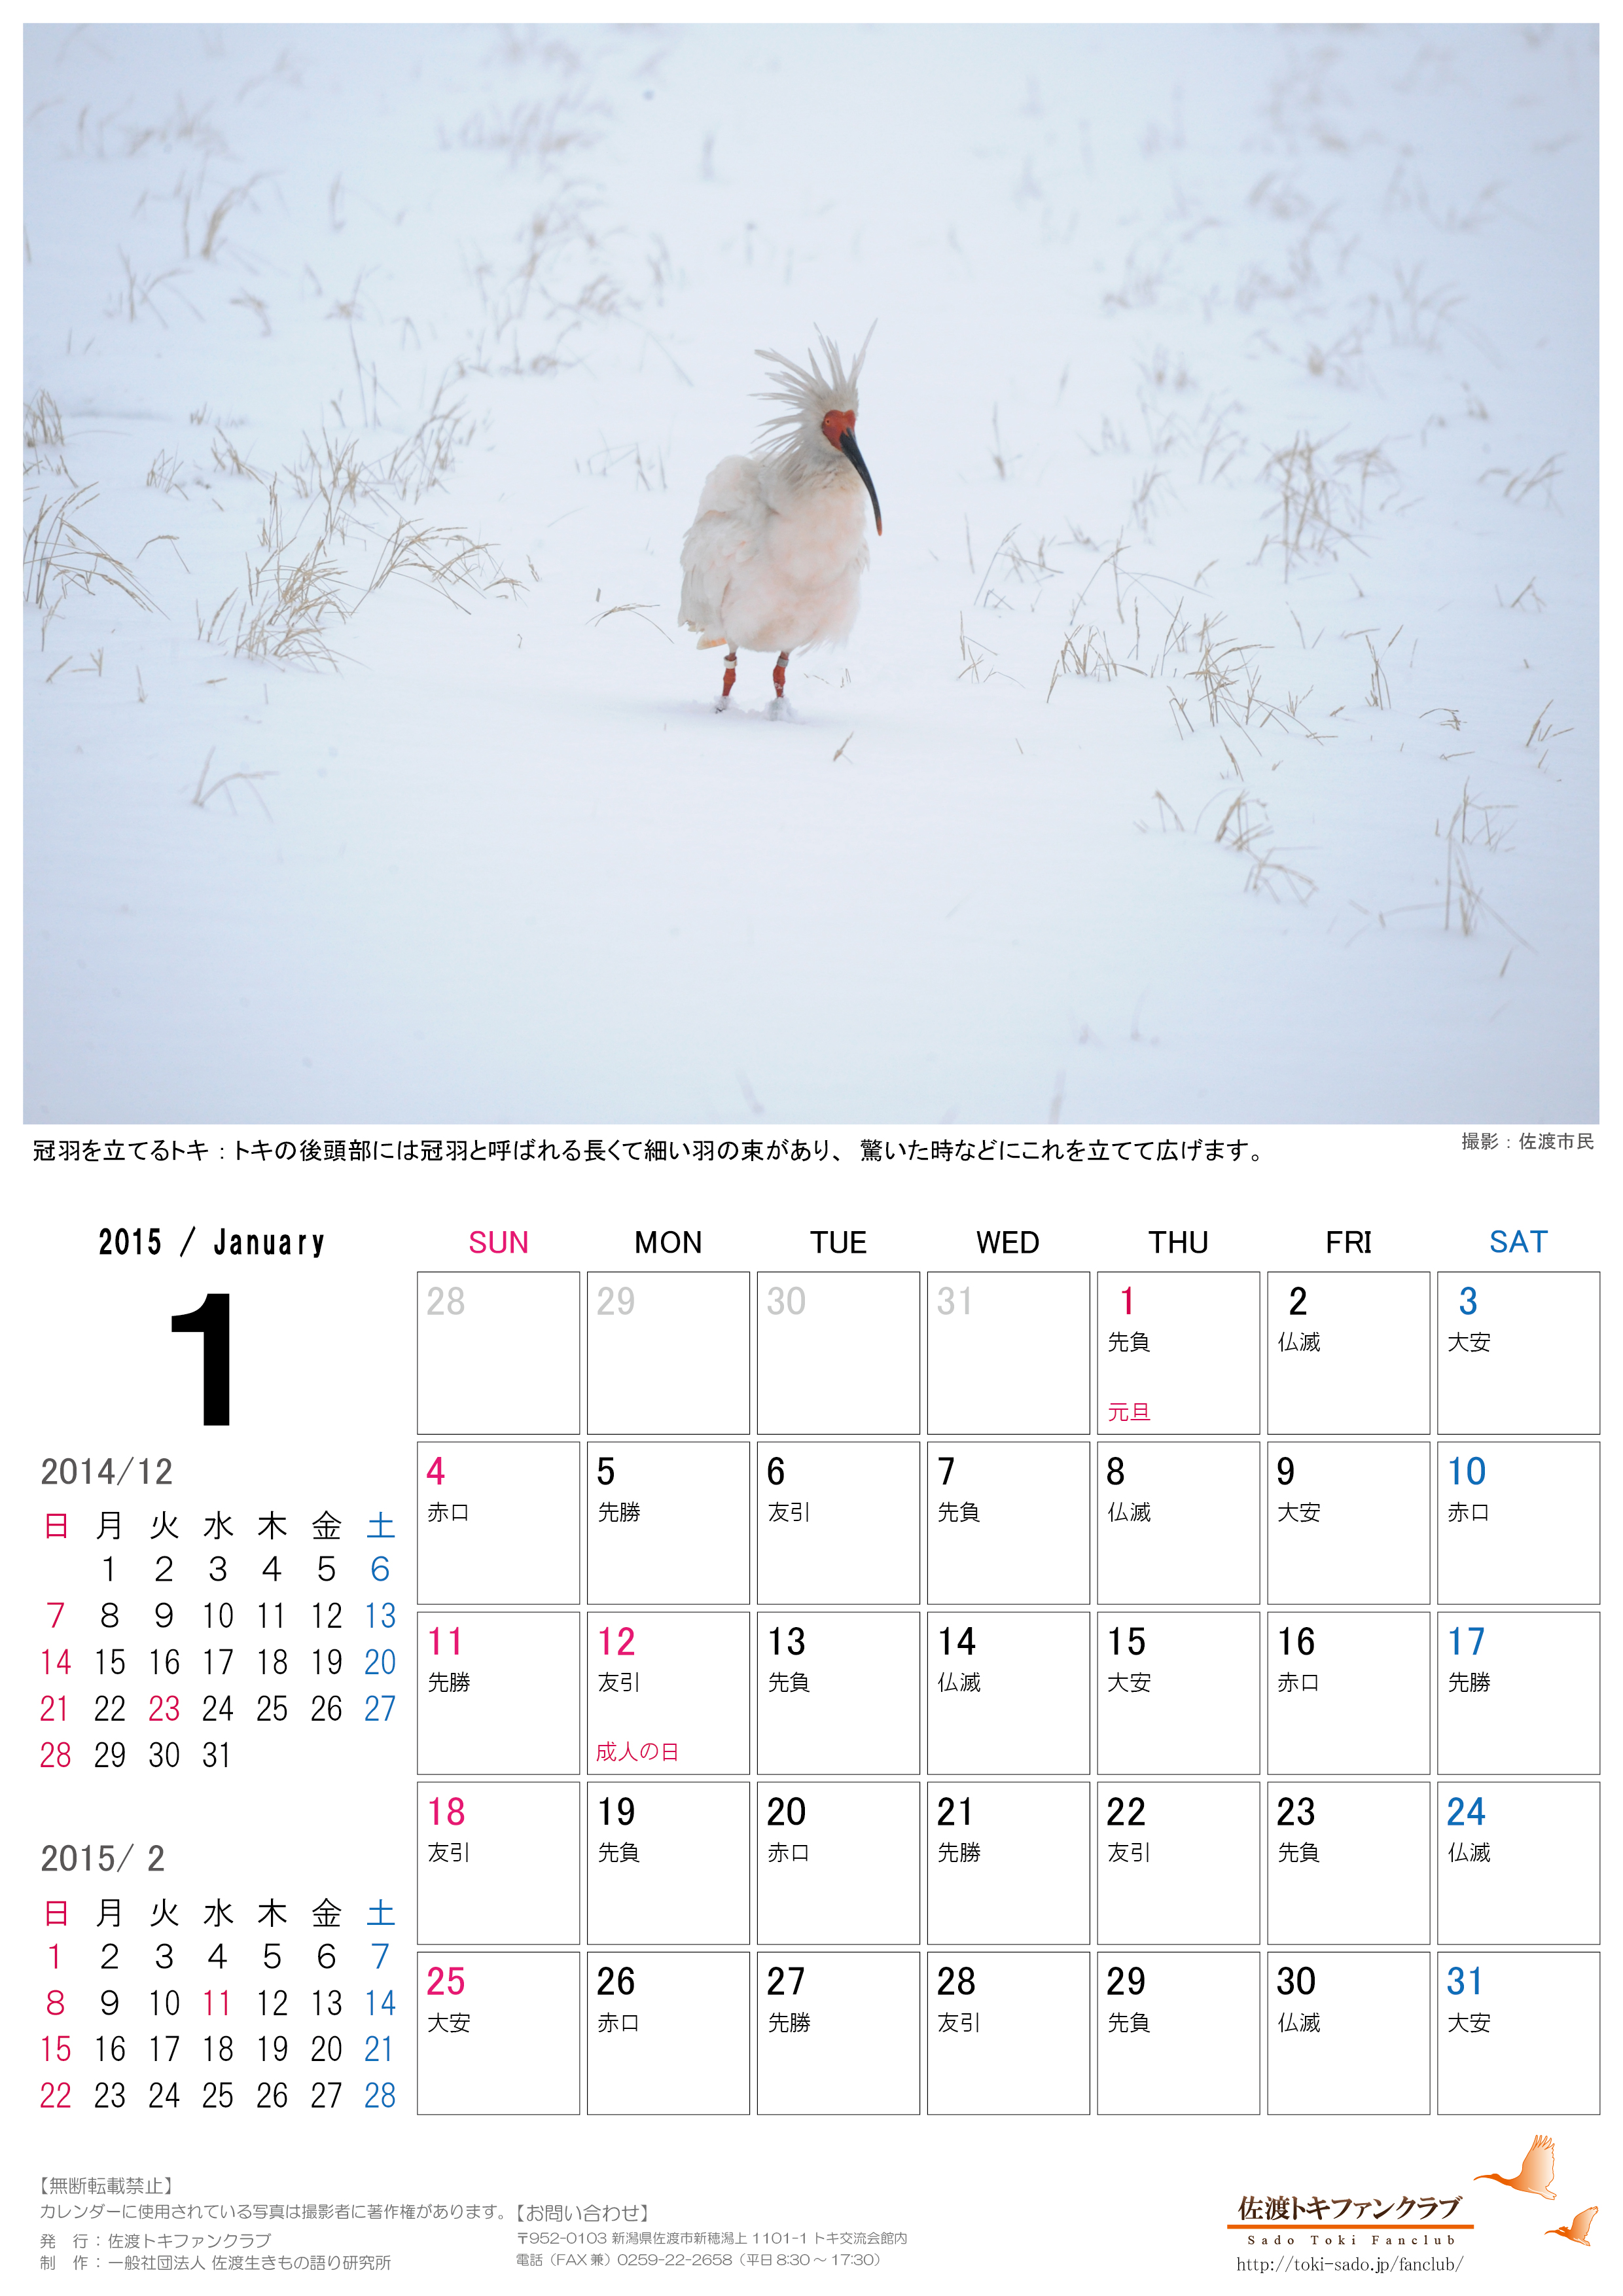 トキファンクラブ2015年１月 2月カレンダー無料配信のお知らせ 佐渡トキファンクラブ